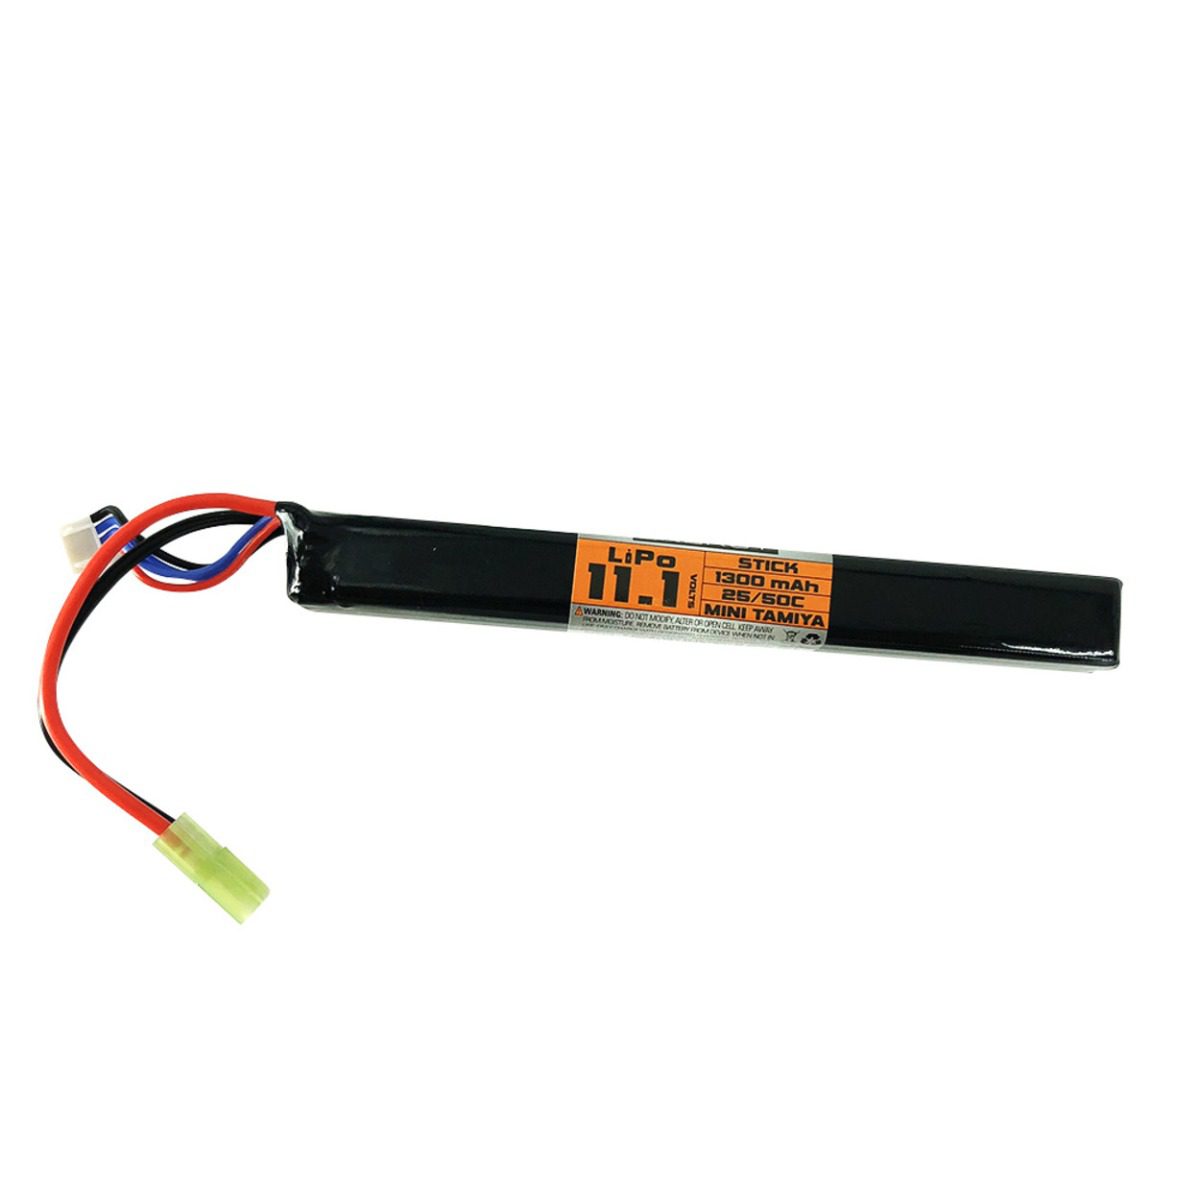 Valken Battery LiPo 11.1V 1300mAh 25/50c Stick